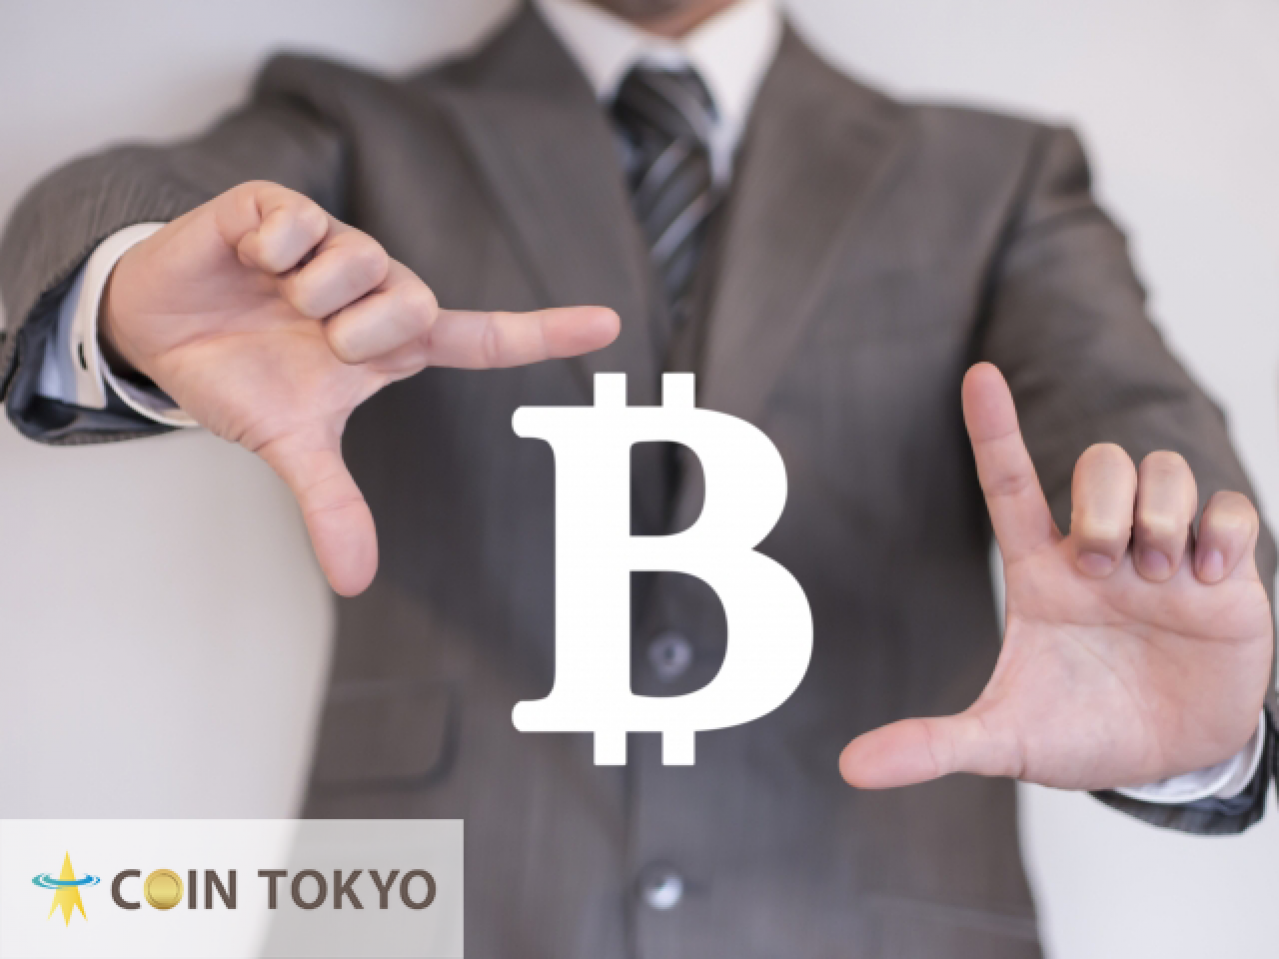 “购买压力”估计在2020年的半衰期中比特币将升至20,000美元至50,000美元+虚拟货币新闻网站Coin Tokyo